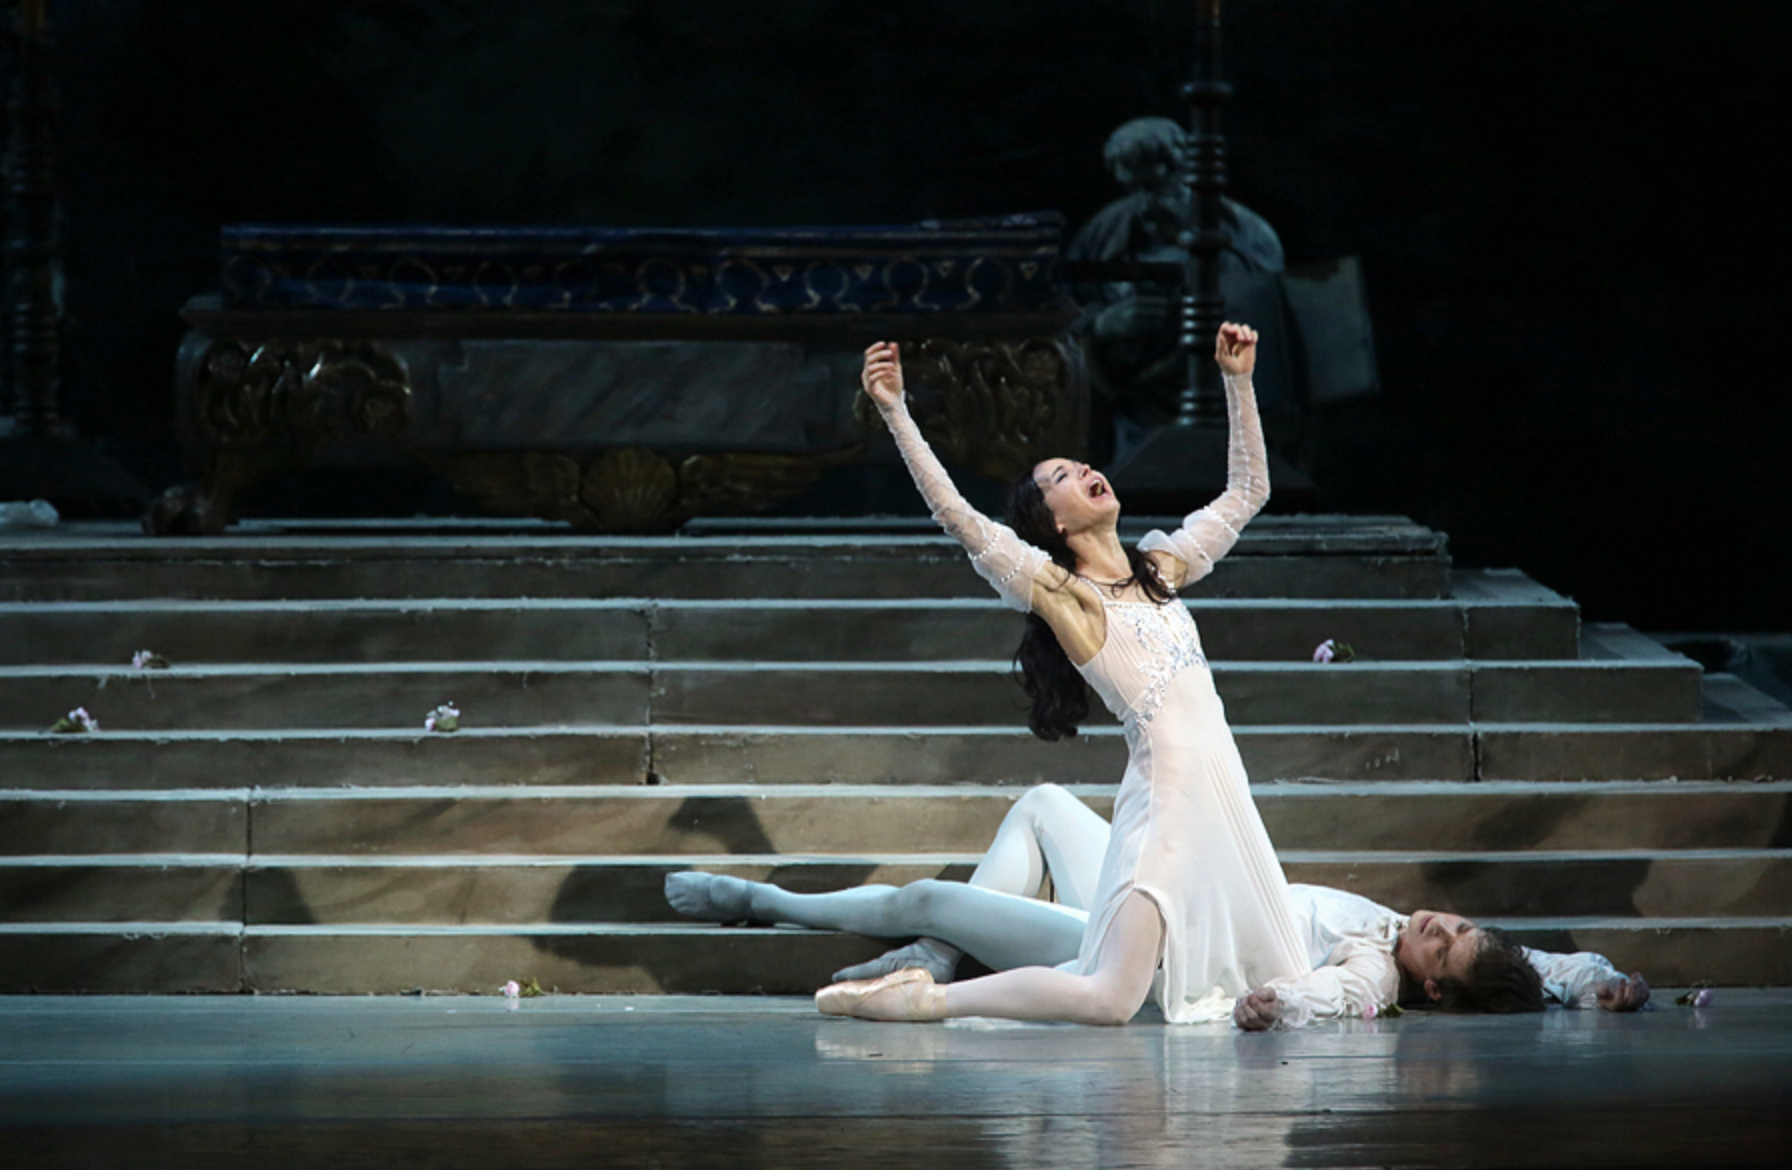 на фото - сцена из балета "Ромео и Джульетта". Фото с официального сайта Мариинского театра.